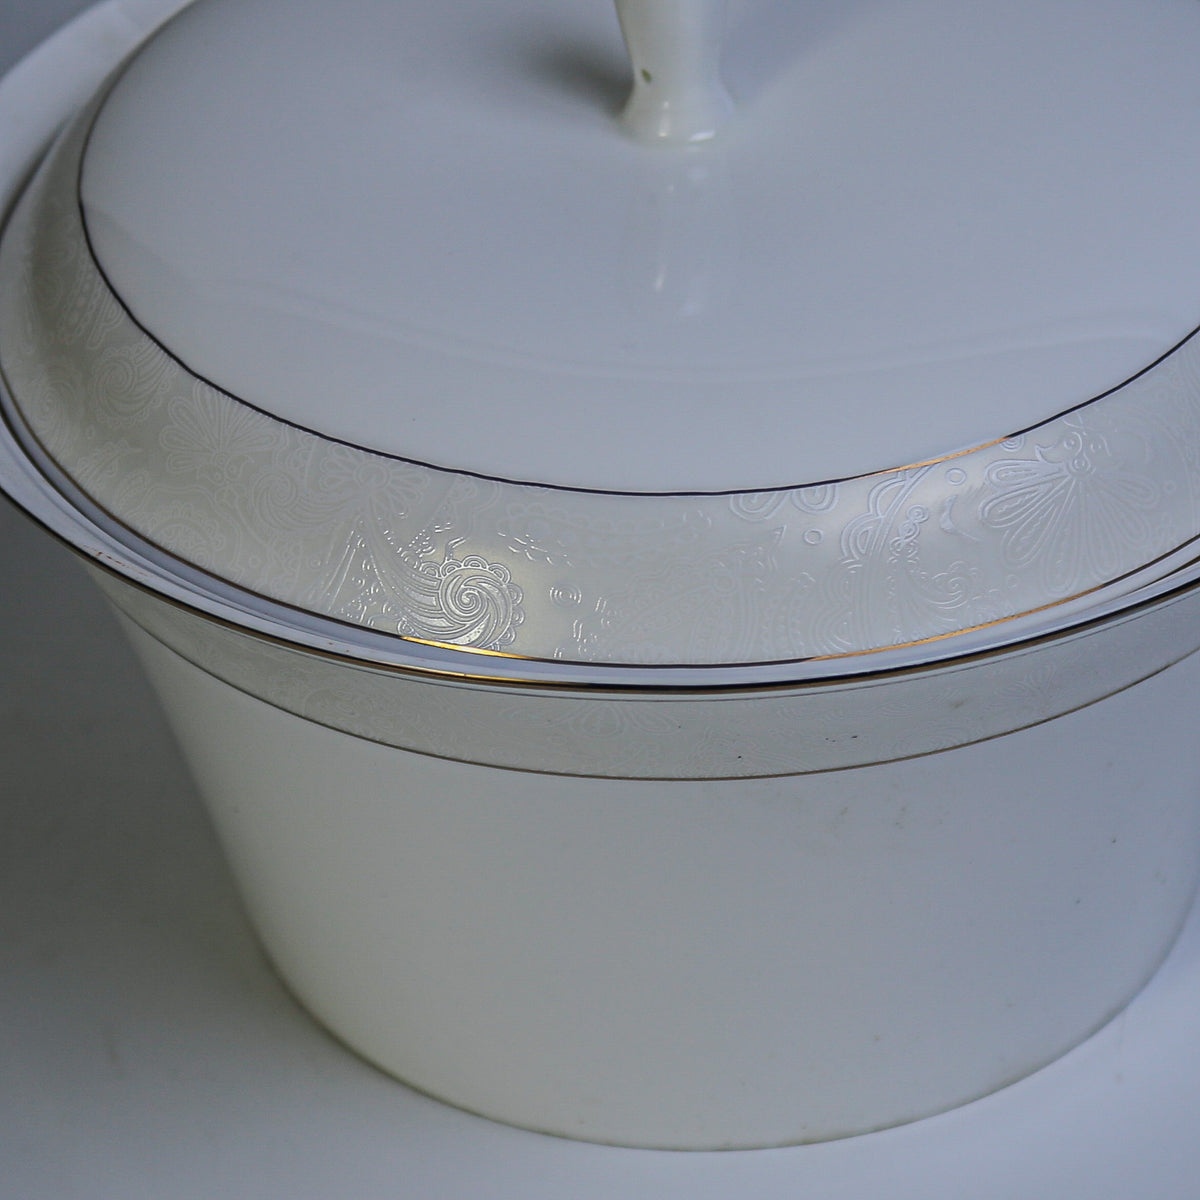 Ceramic Porcelain Serving Bowl with Lid